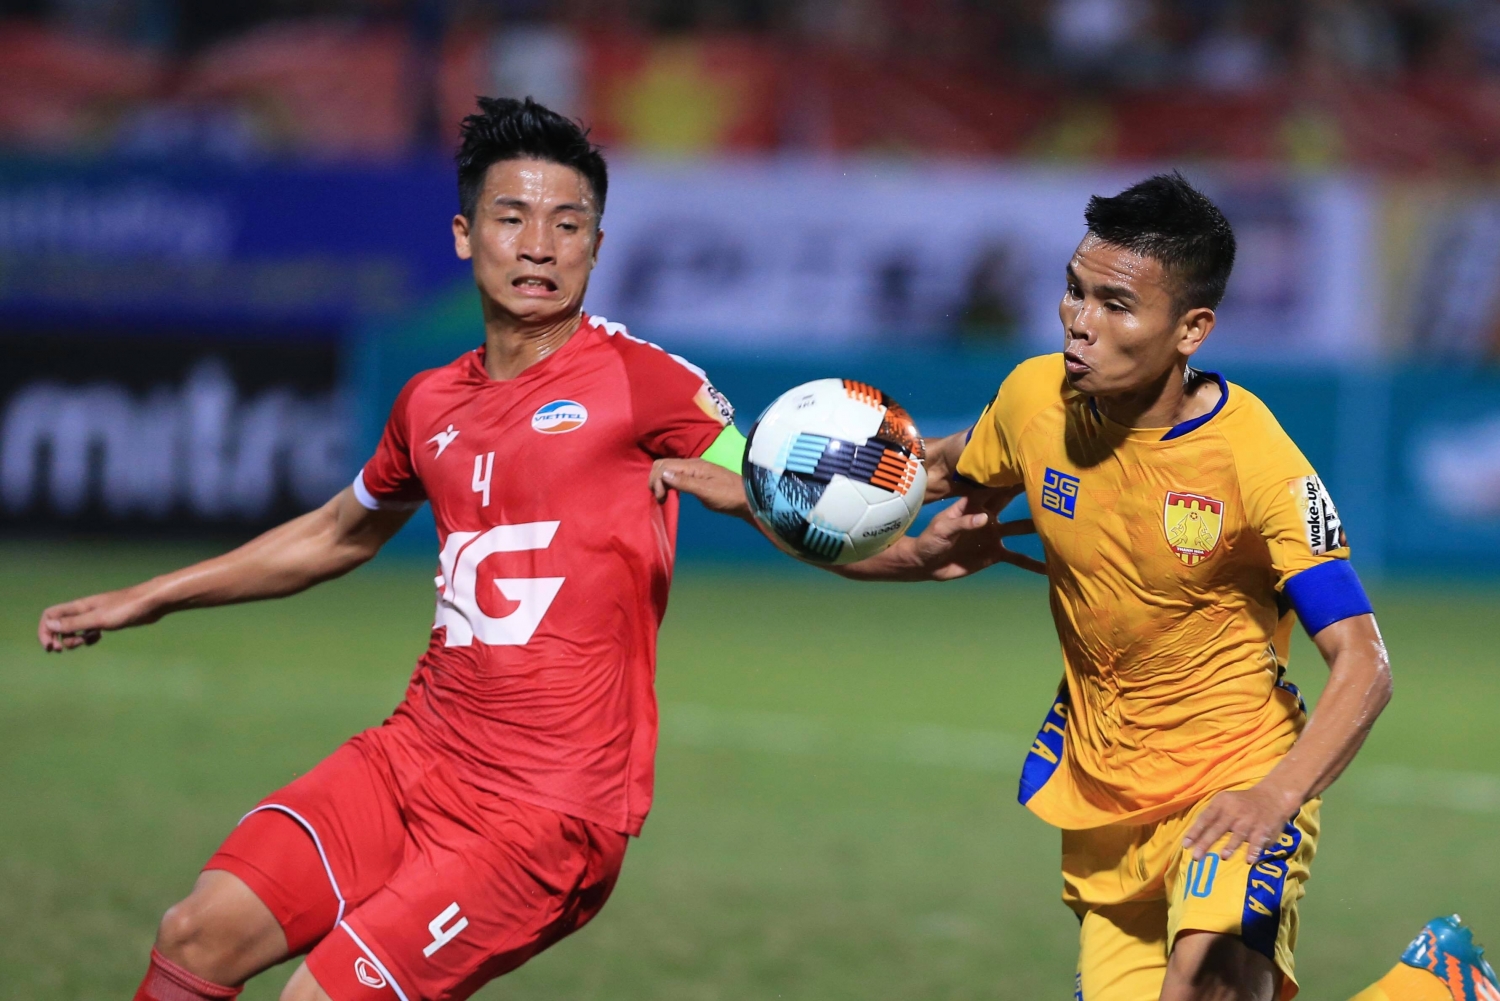 Vòng 25 V-League 2019: Xem trực tiếp Thanh Hóa vs Viettel ở đâu?